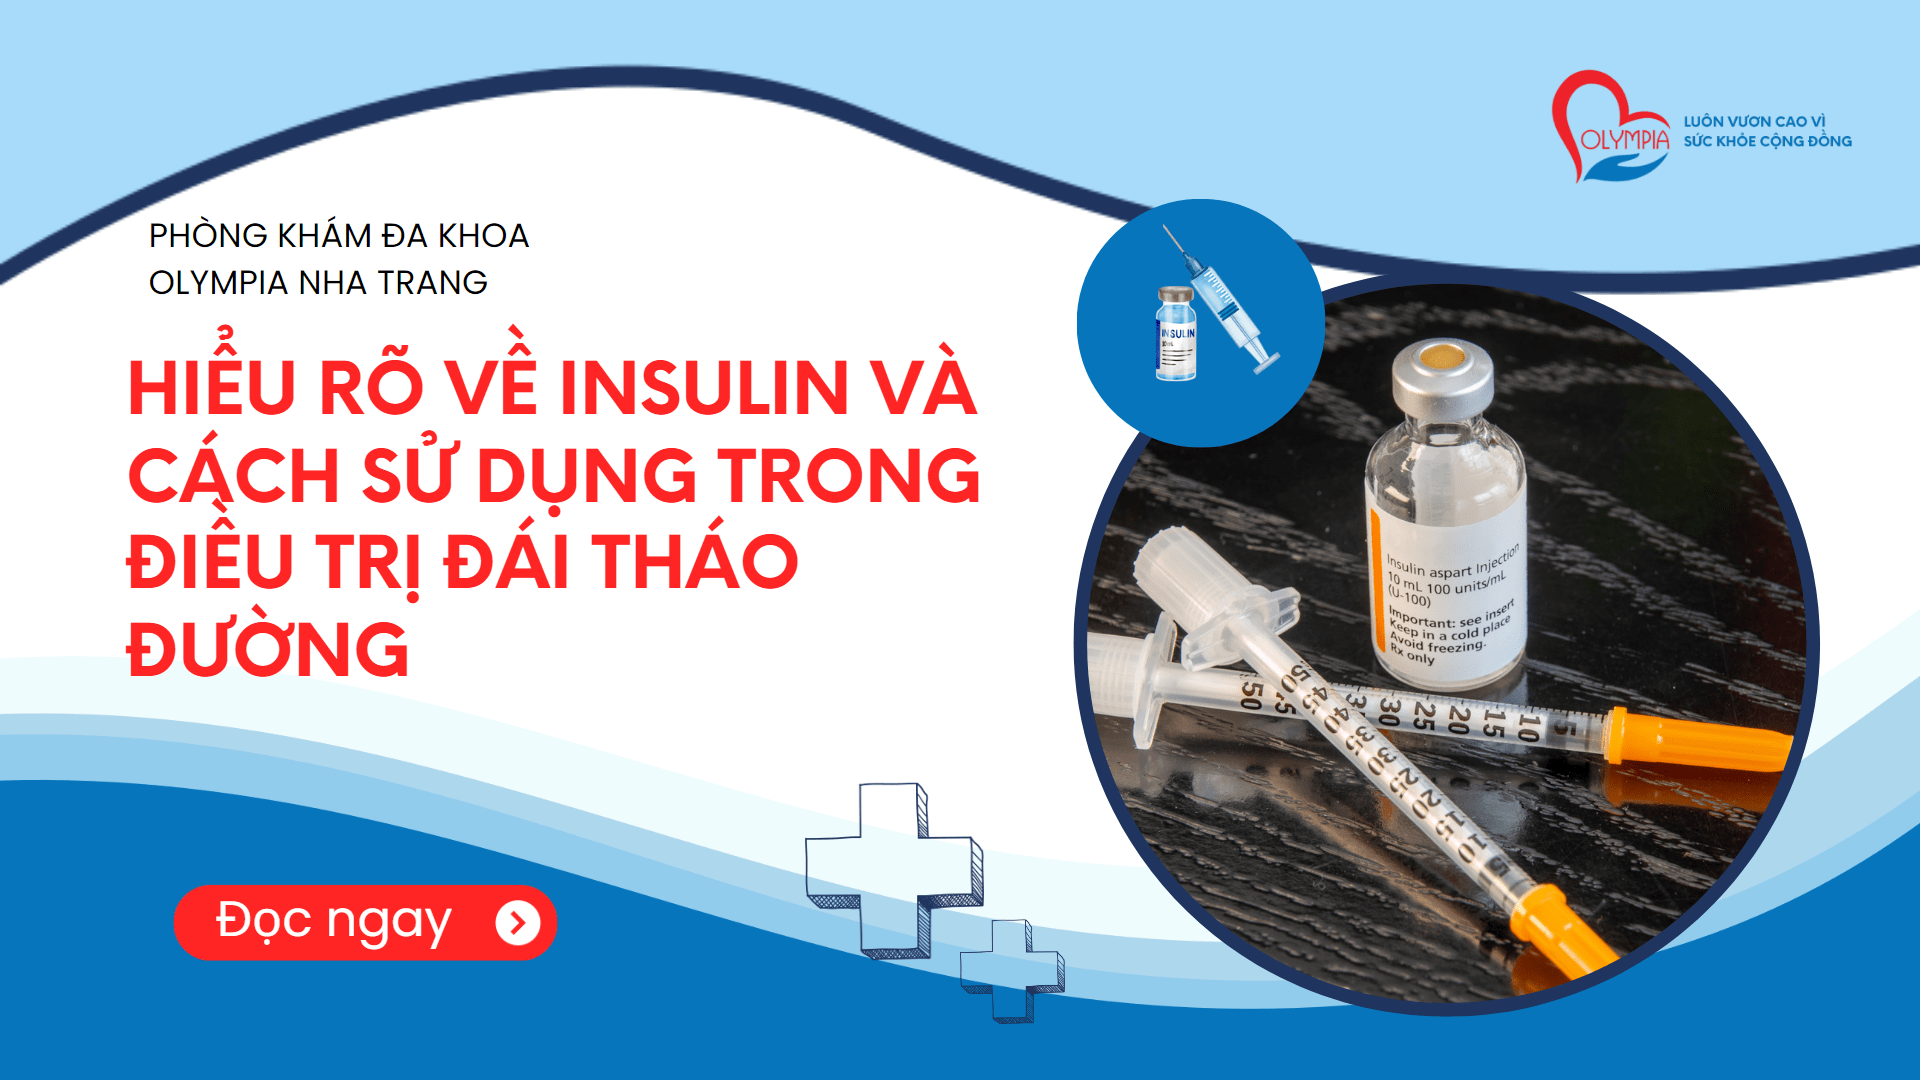 Hiểu rõ về Insulin và cách sử dụng trong điều trị Đái tháo đường